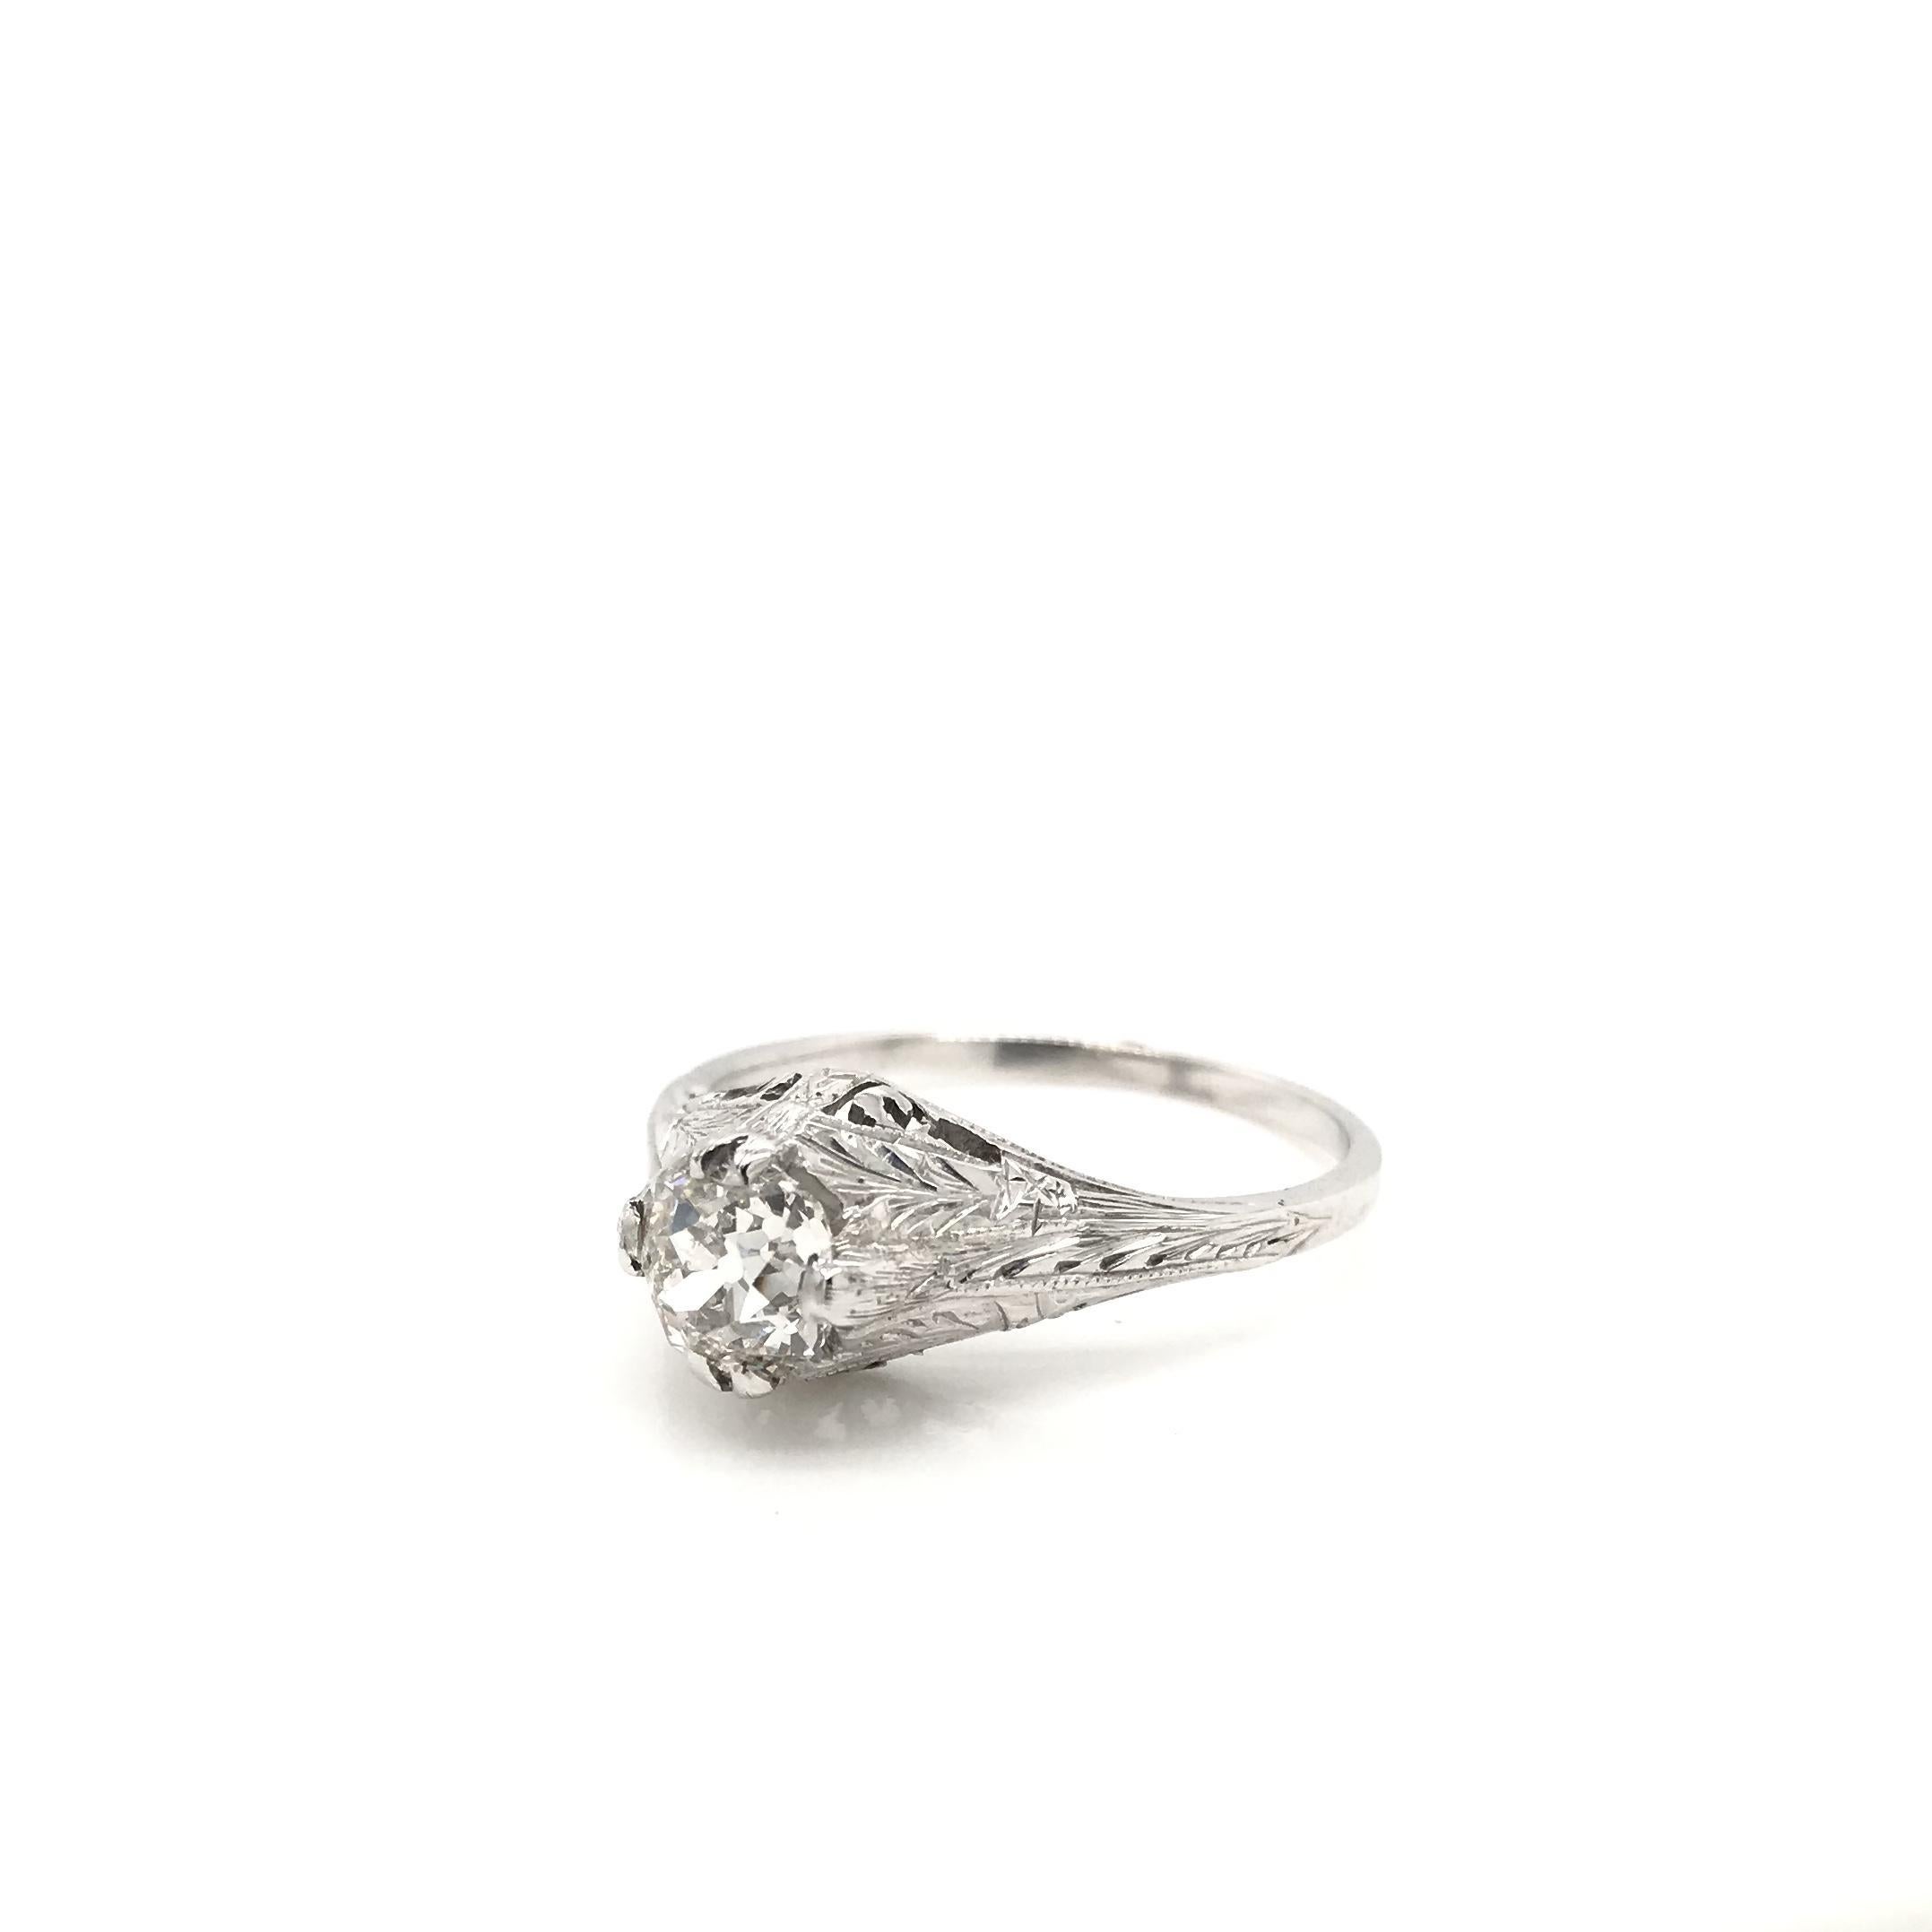 Cette bague solitaire ancienne en diamant a été fabriquée au cours de la période du design Art Deco (1920-1940). La monture est en or blanc 20K et comporte un diamant central mesurant environ 0,71 carats. Le diamant central est une taille européenne